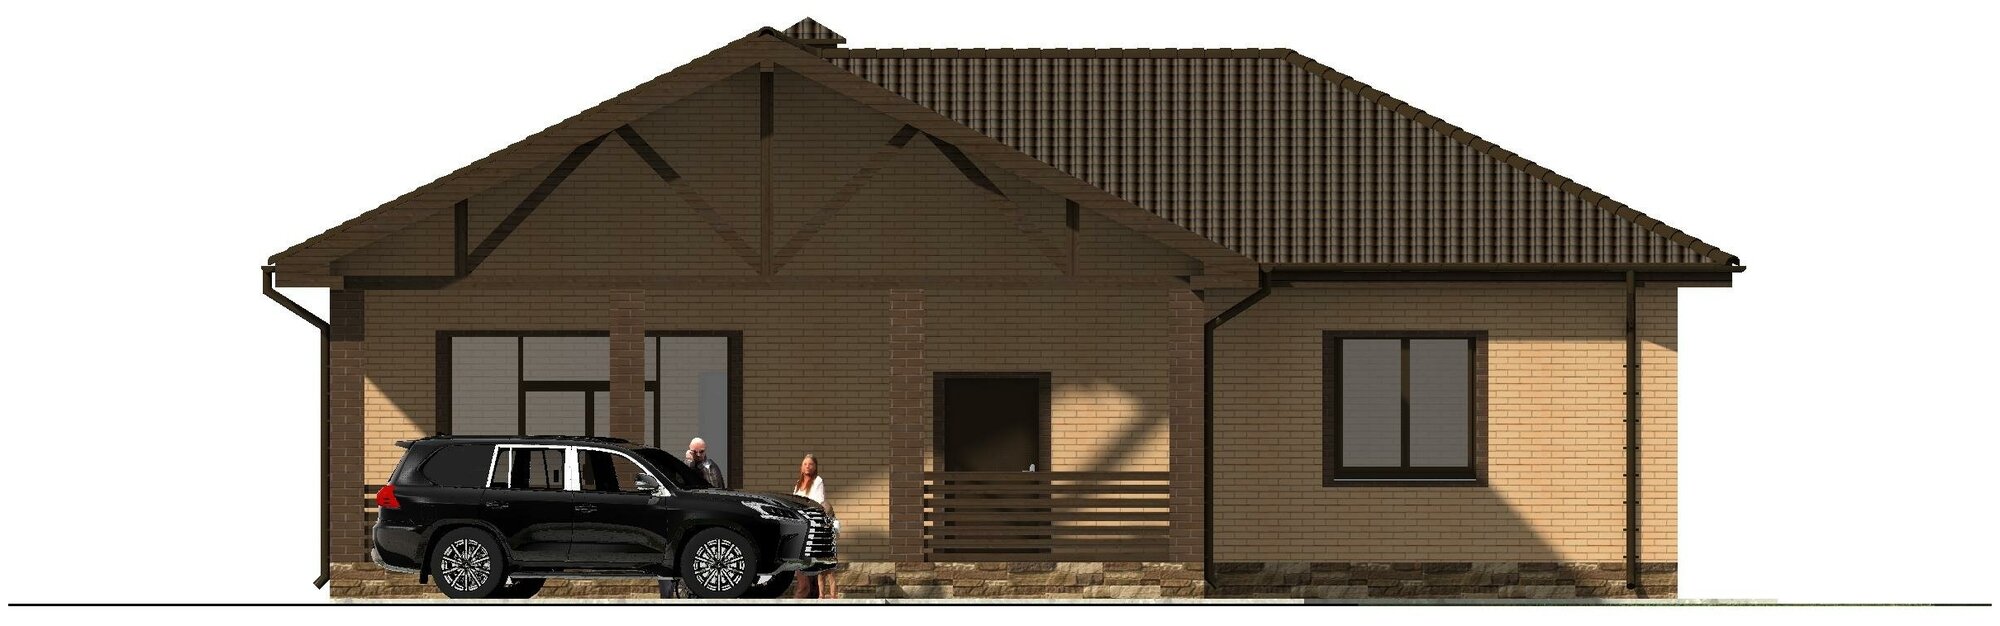 Готовый проект одноэтажного дома без гаража из газобетонного блока с облицовкой из керамического кирпича площадью 139,9 кв.м - фотография № 10